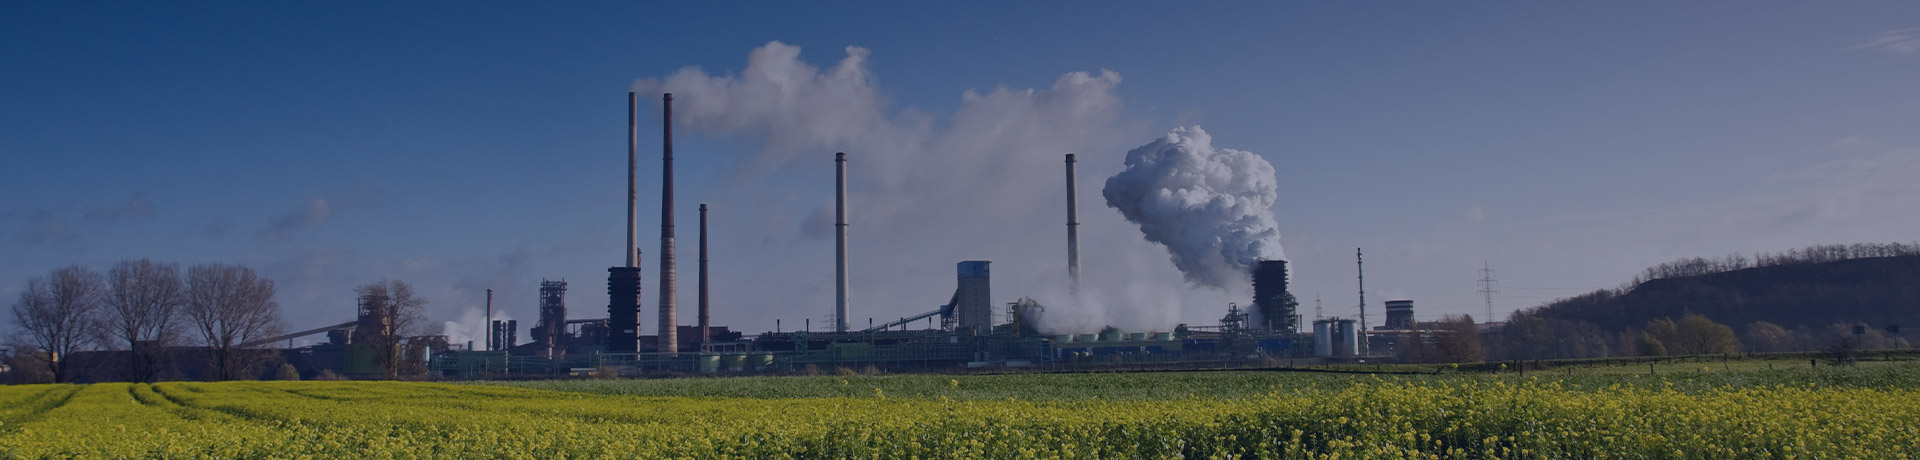 Une usine qui dégage de la fumée polluante